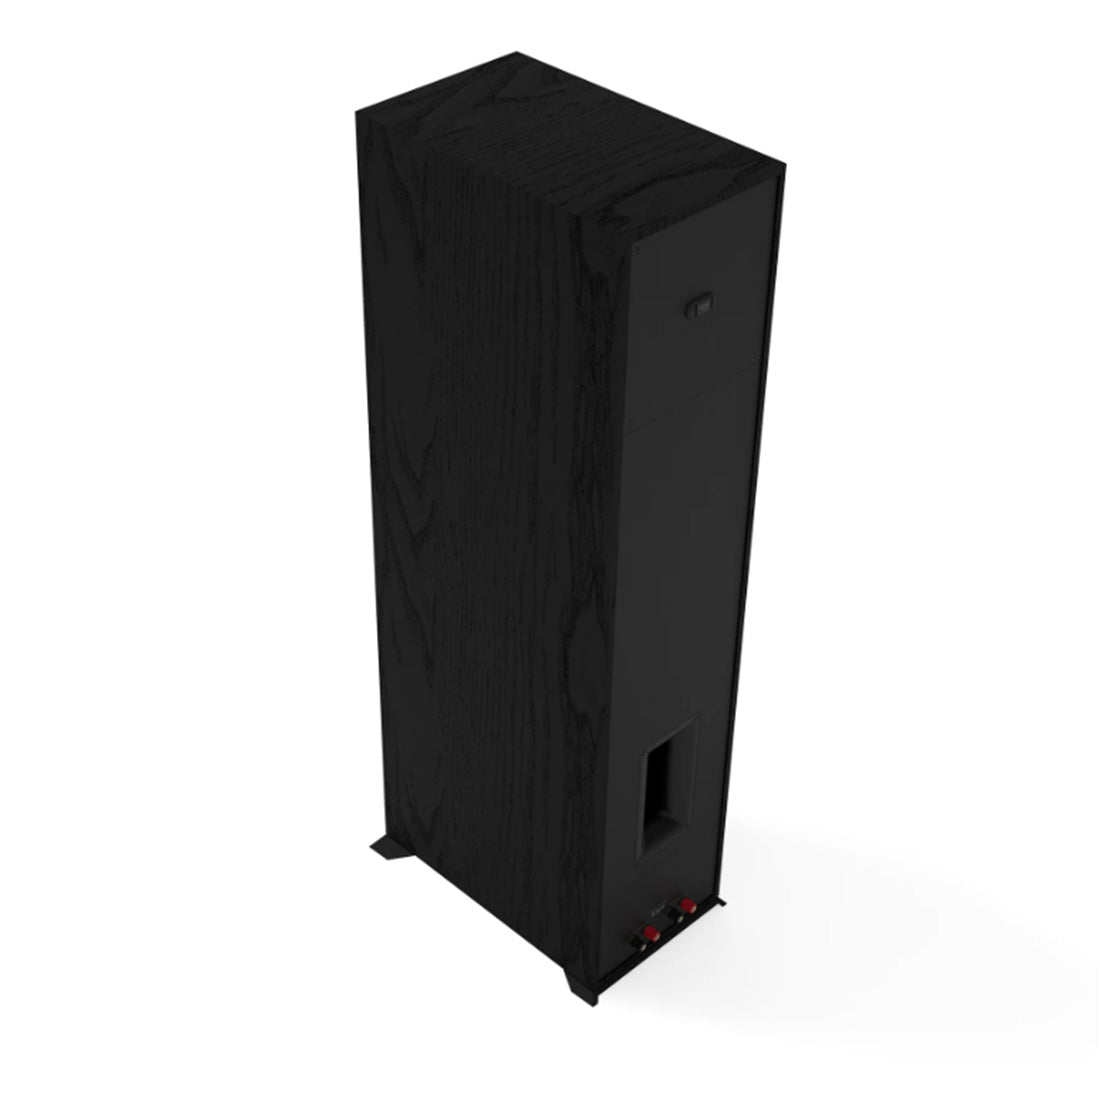 Klipsch R-800F Reference Floor Standing Speakers – Black – Pair - 2023 Model